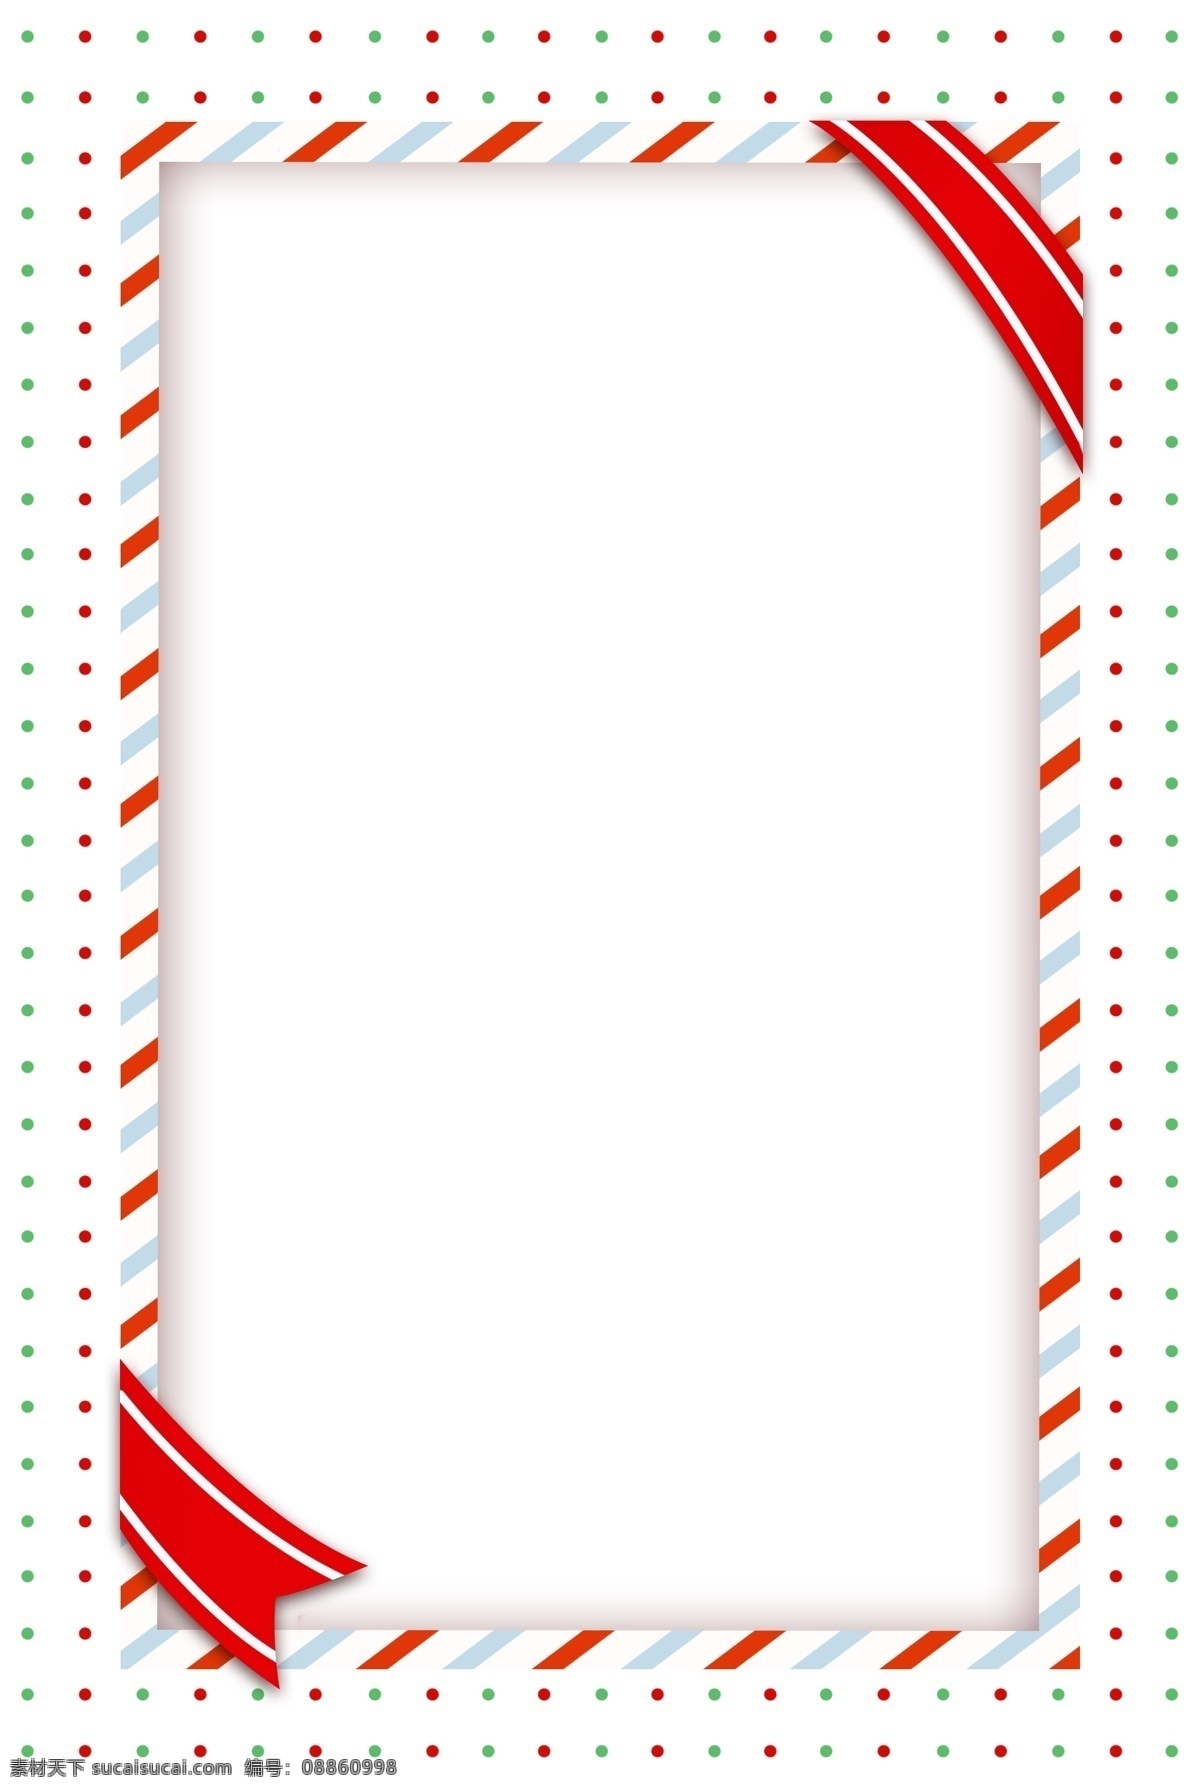 手绘 立体 剪纸 边框 剪纸边框 立体剪纸 红色丝带 长方形边框 圣诞节 圣诞边框 边框插画